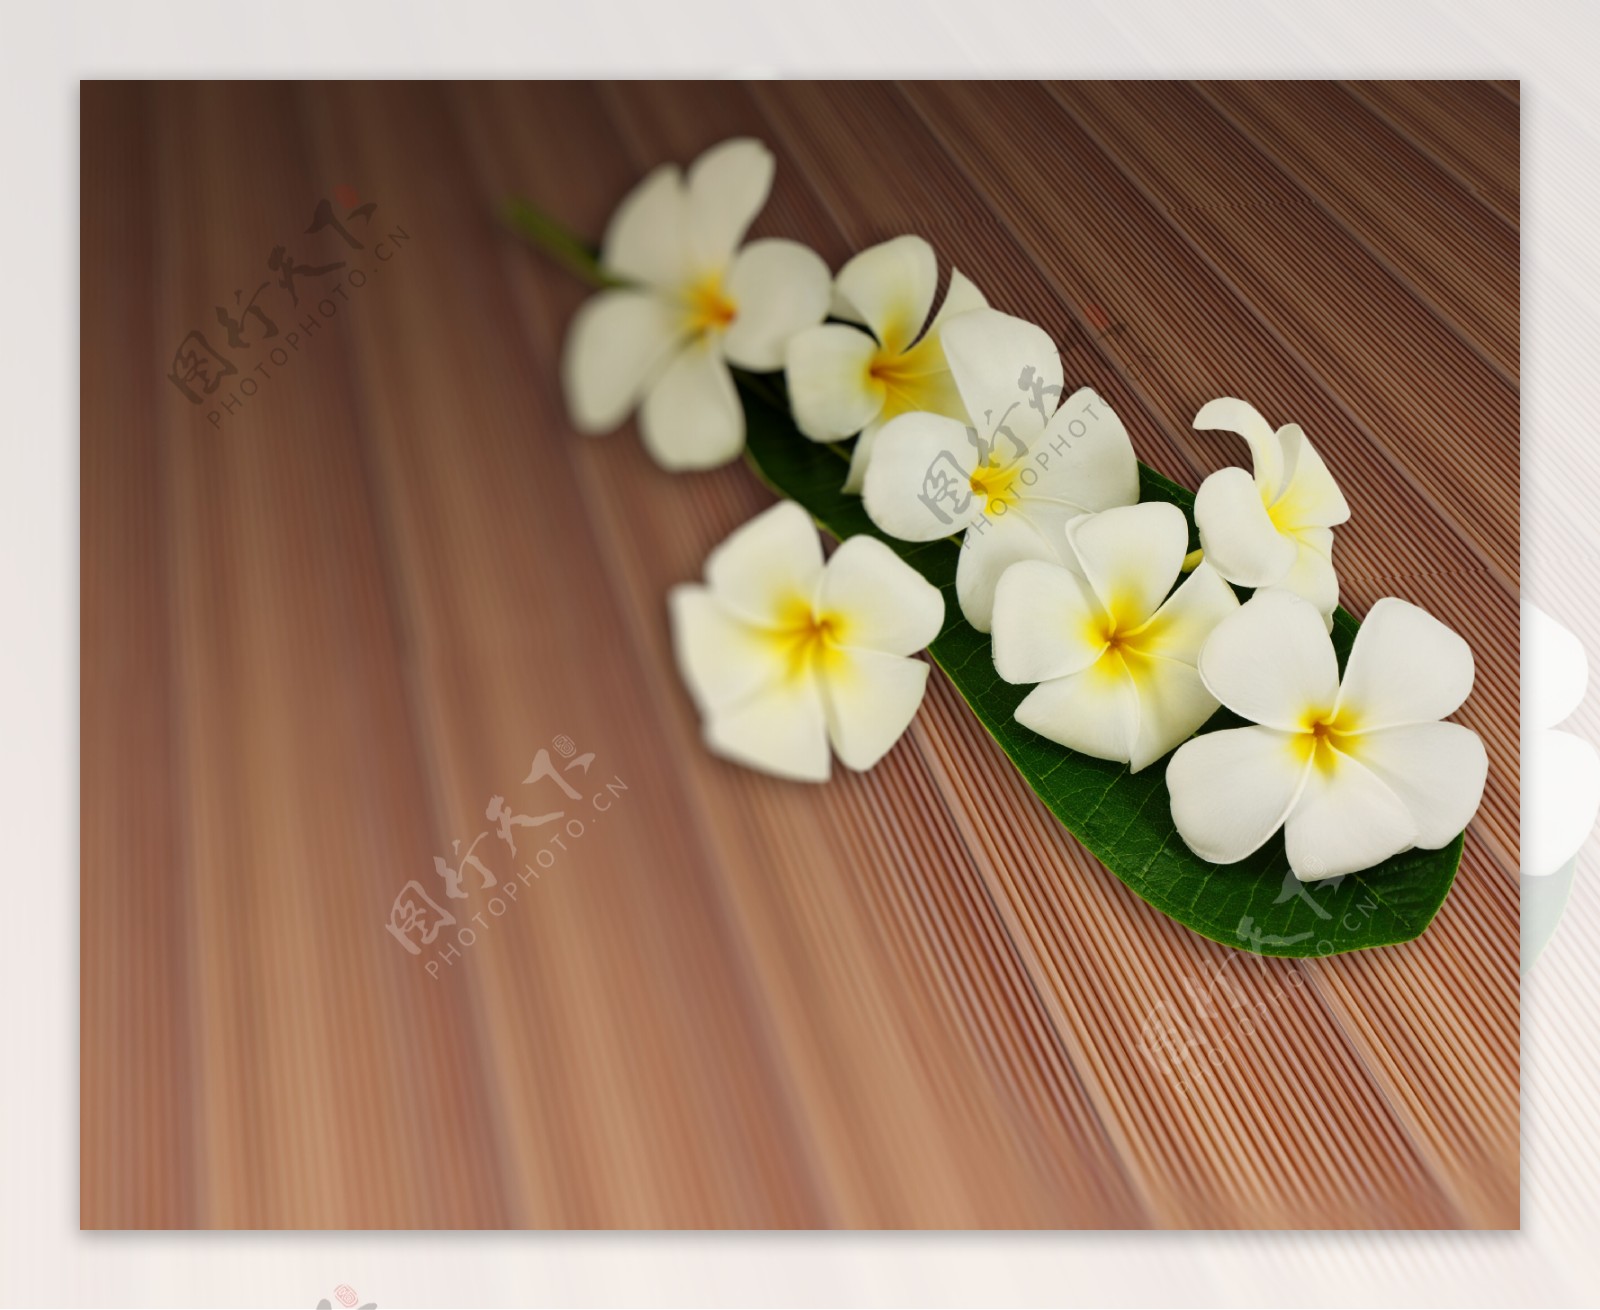 对板材纹理柚木条木地板的鸡蛋花叶花束